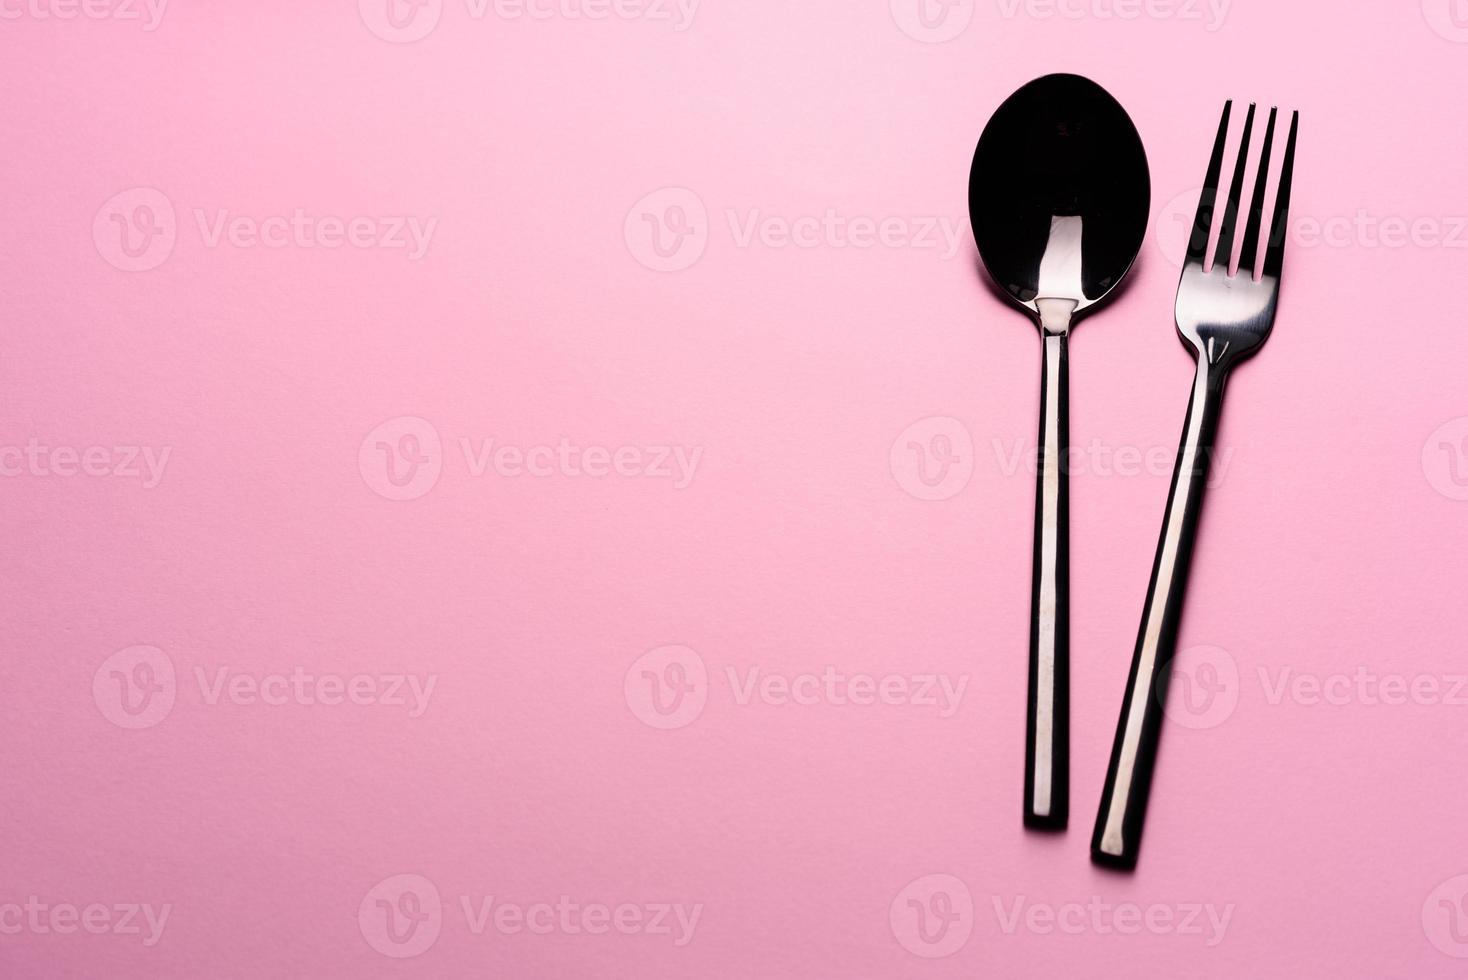 colher de metal e garfo isolados em fundo rosa foto